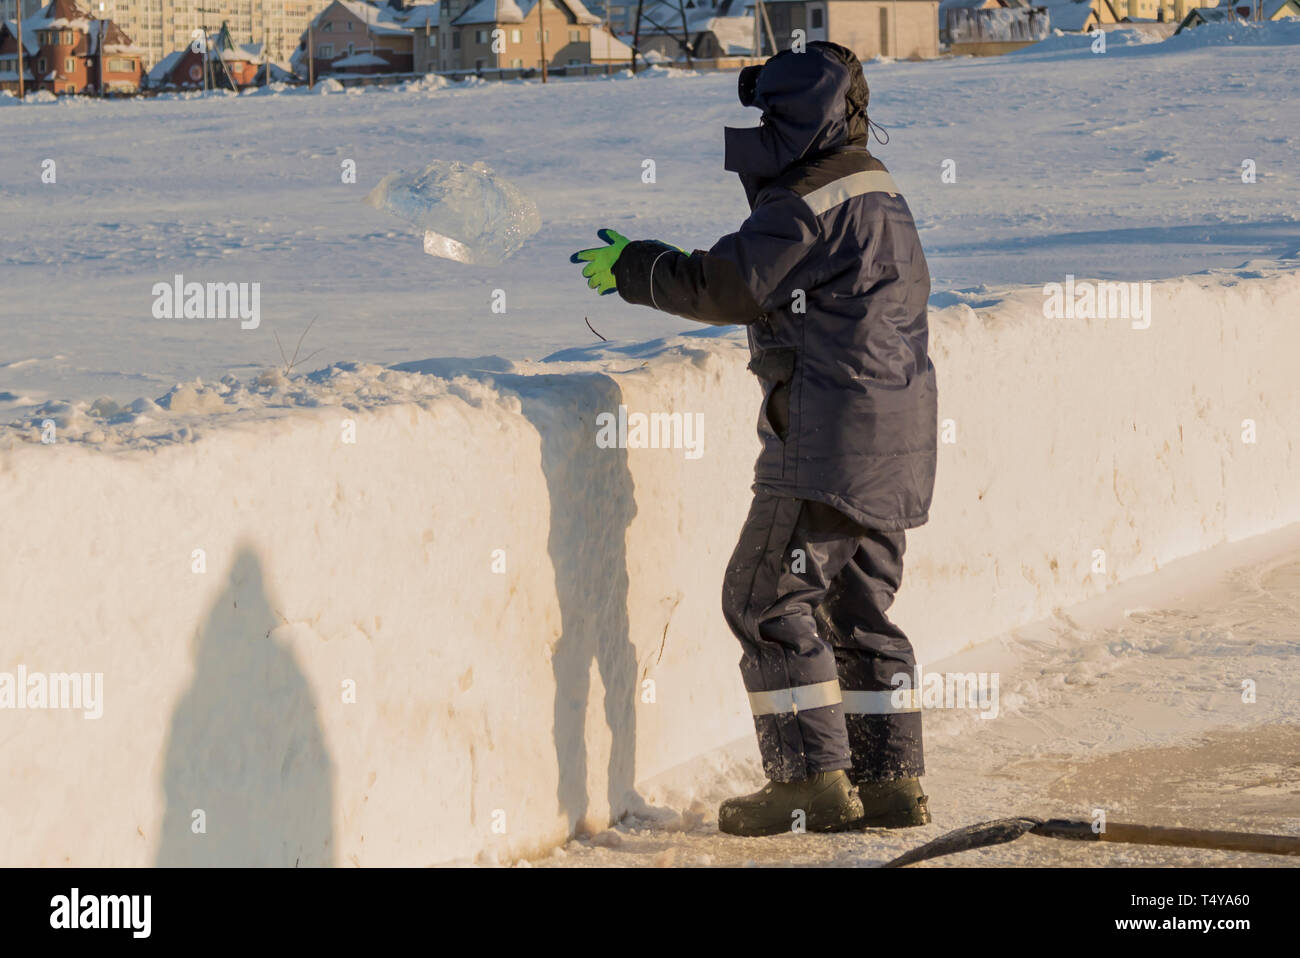 Trabajador en una chaqueta azul con un capó lanza un bloque de hielo de un montículo de nieve Foto de stock